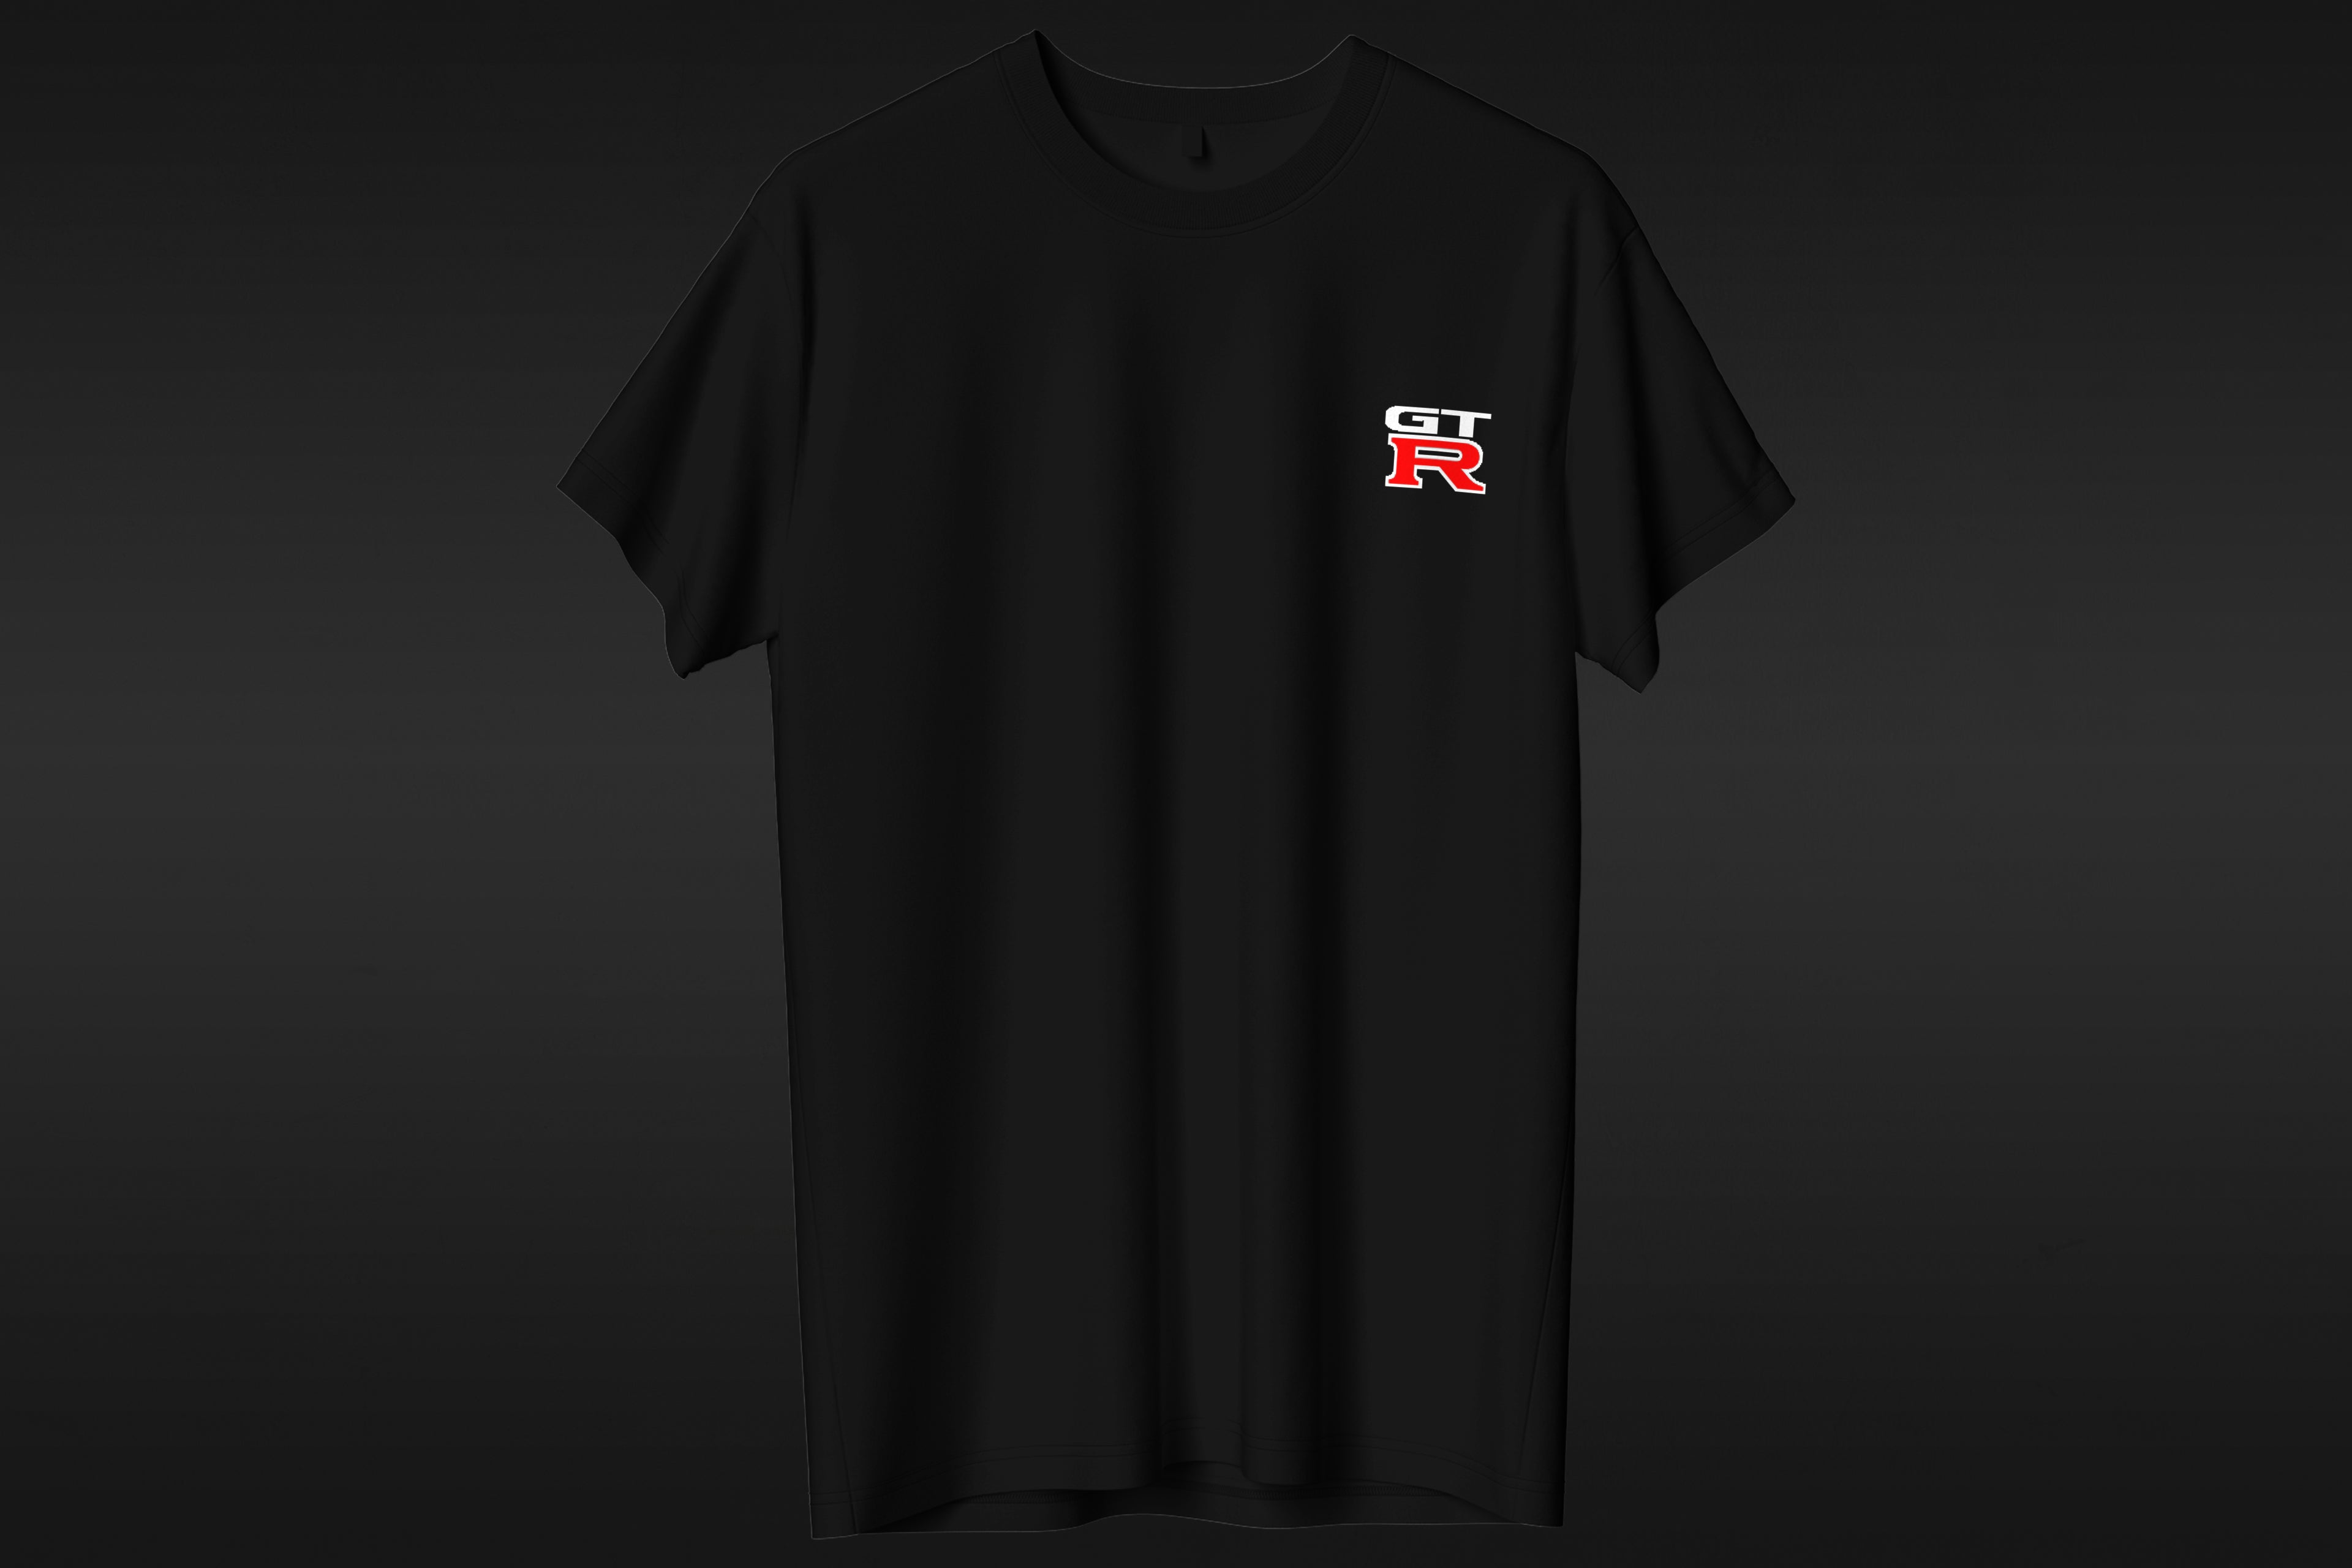 Nissan GTR - T-shirt